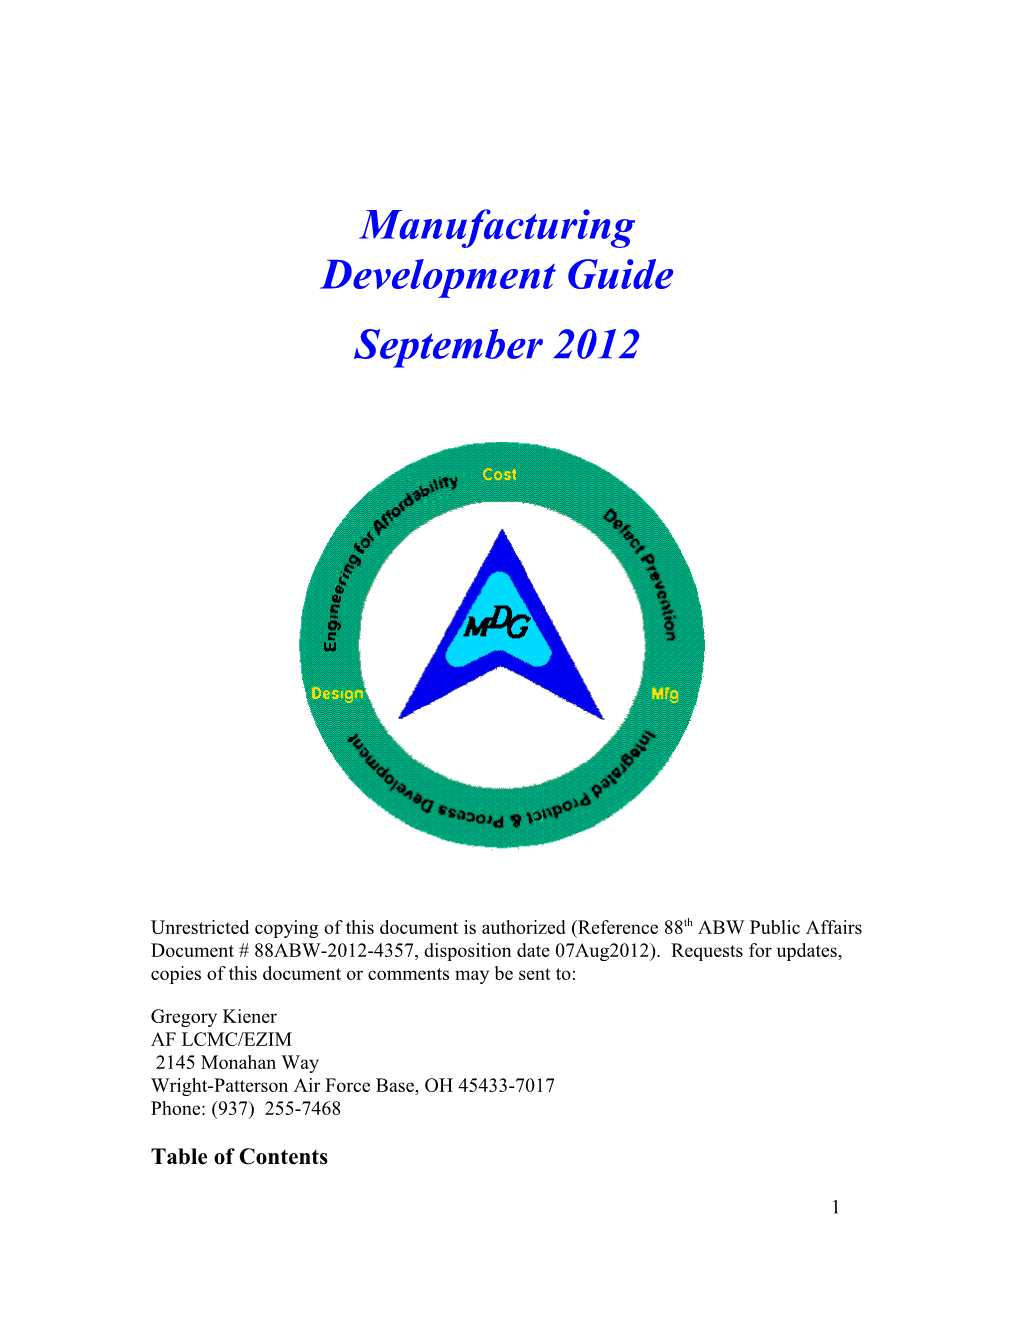 Manufacturing Development Guide